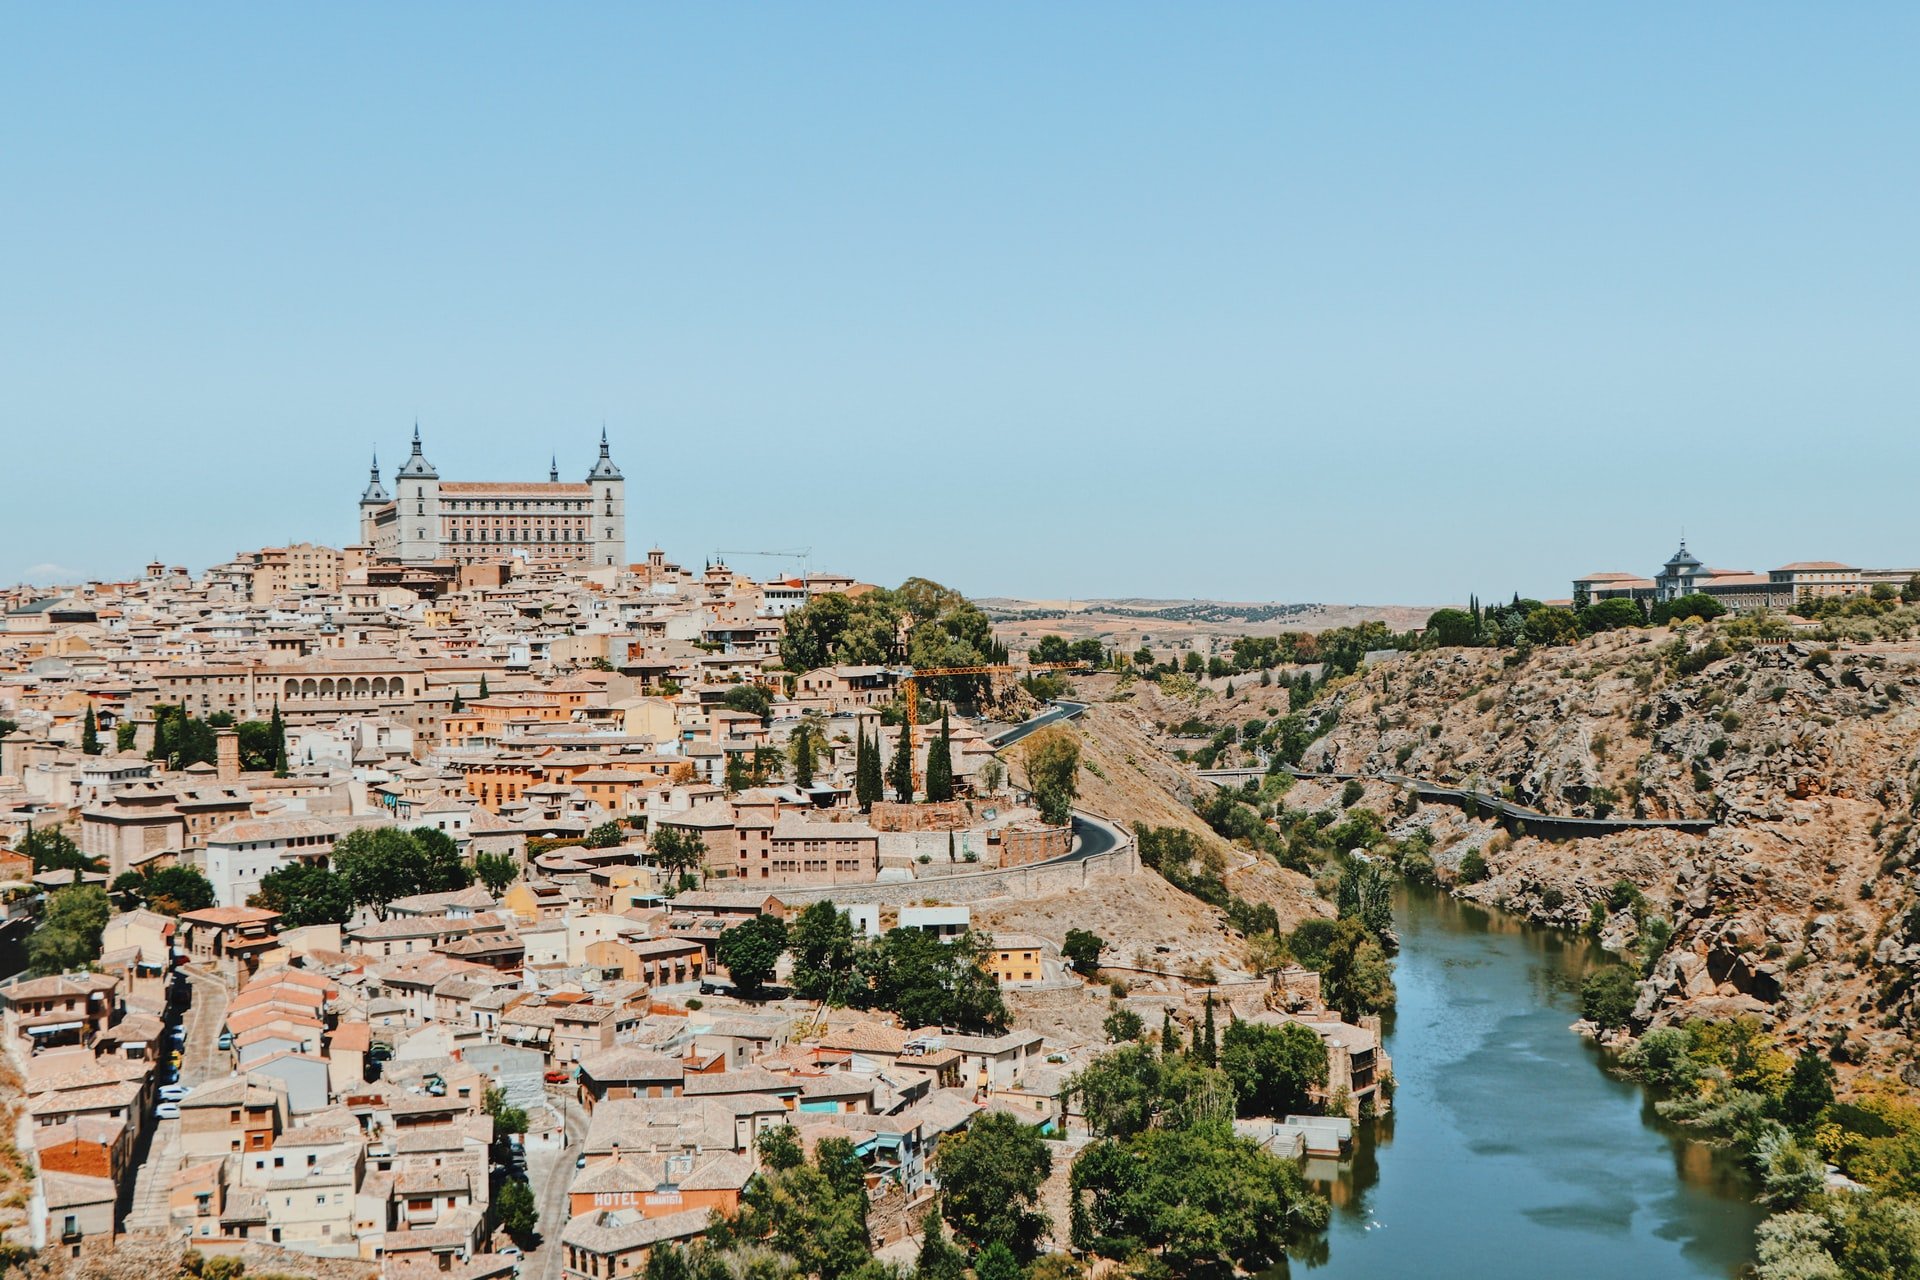 Toledo escapadas transporte publico madrid